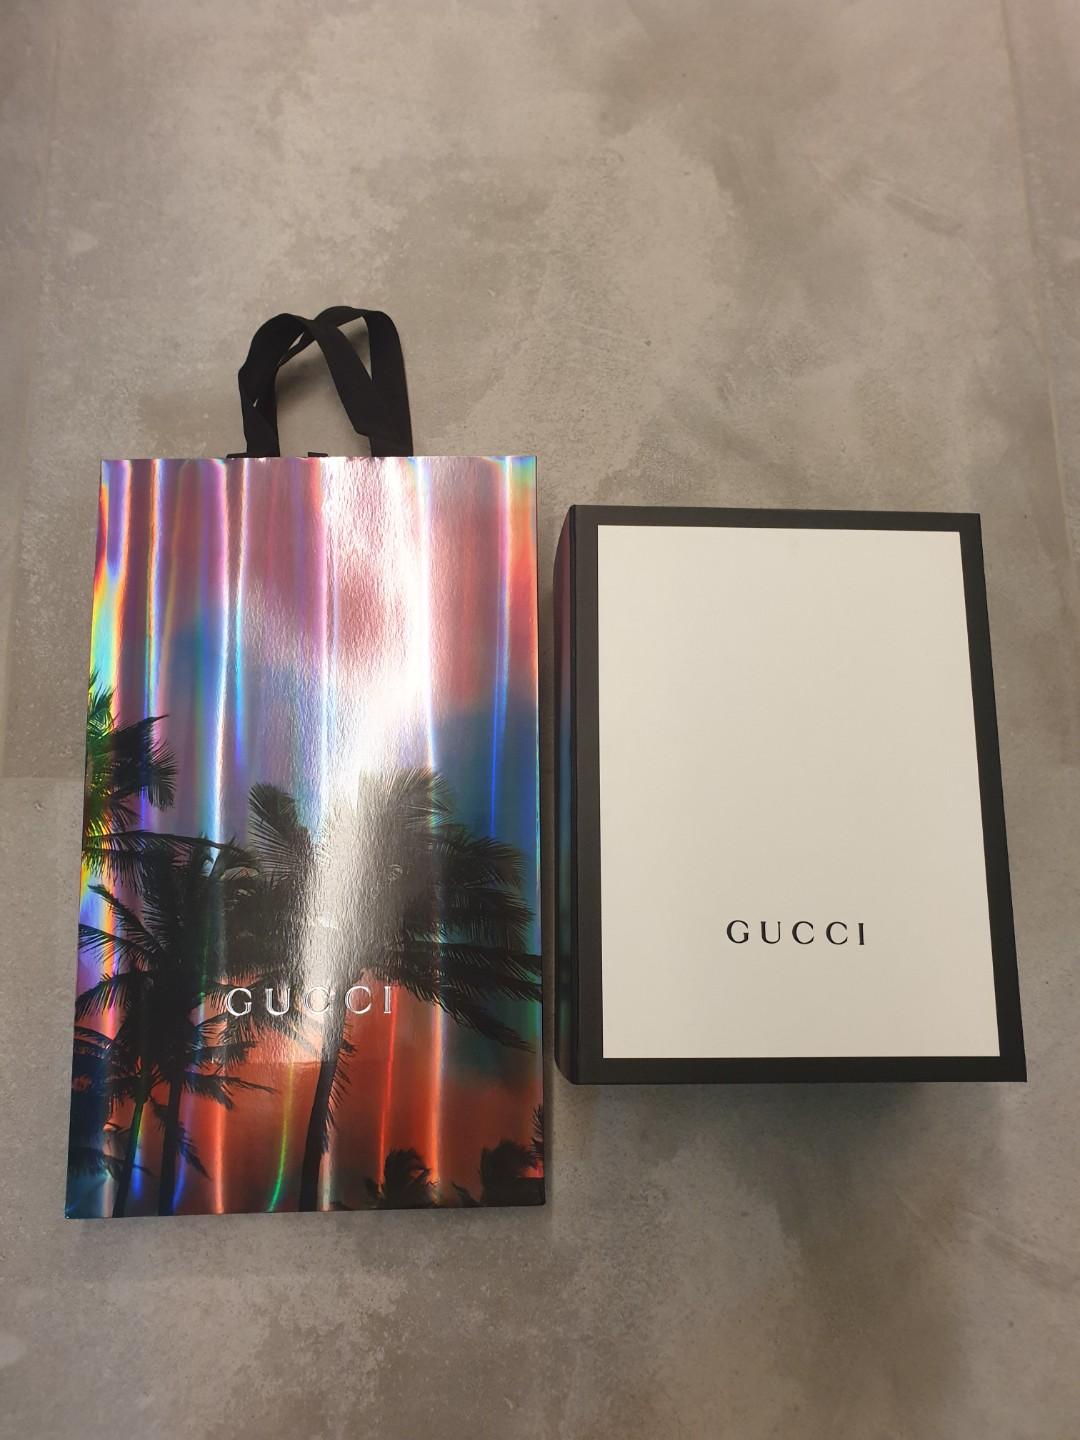 gucci paper bag 2019